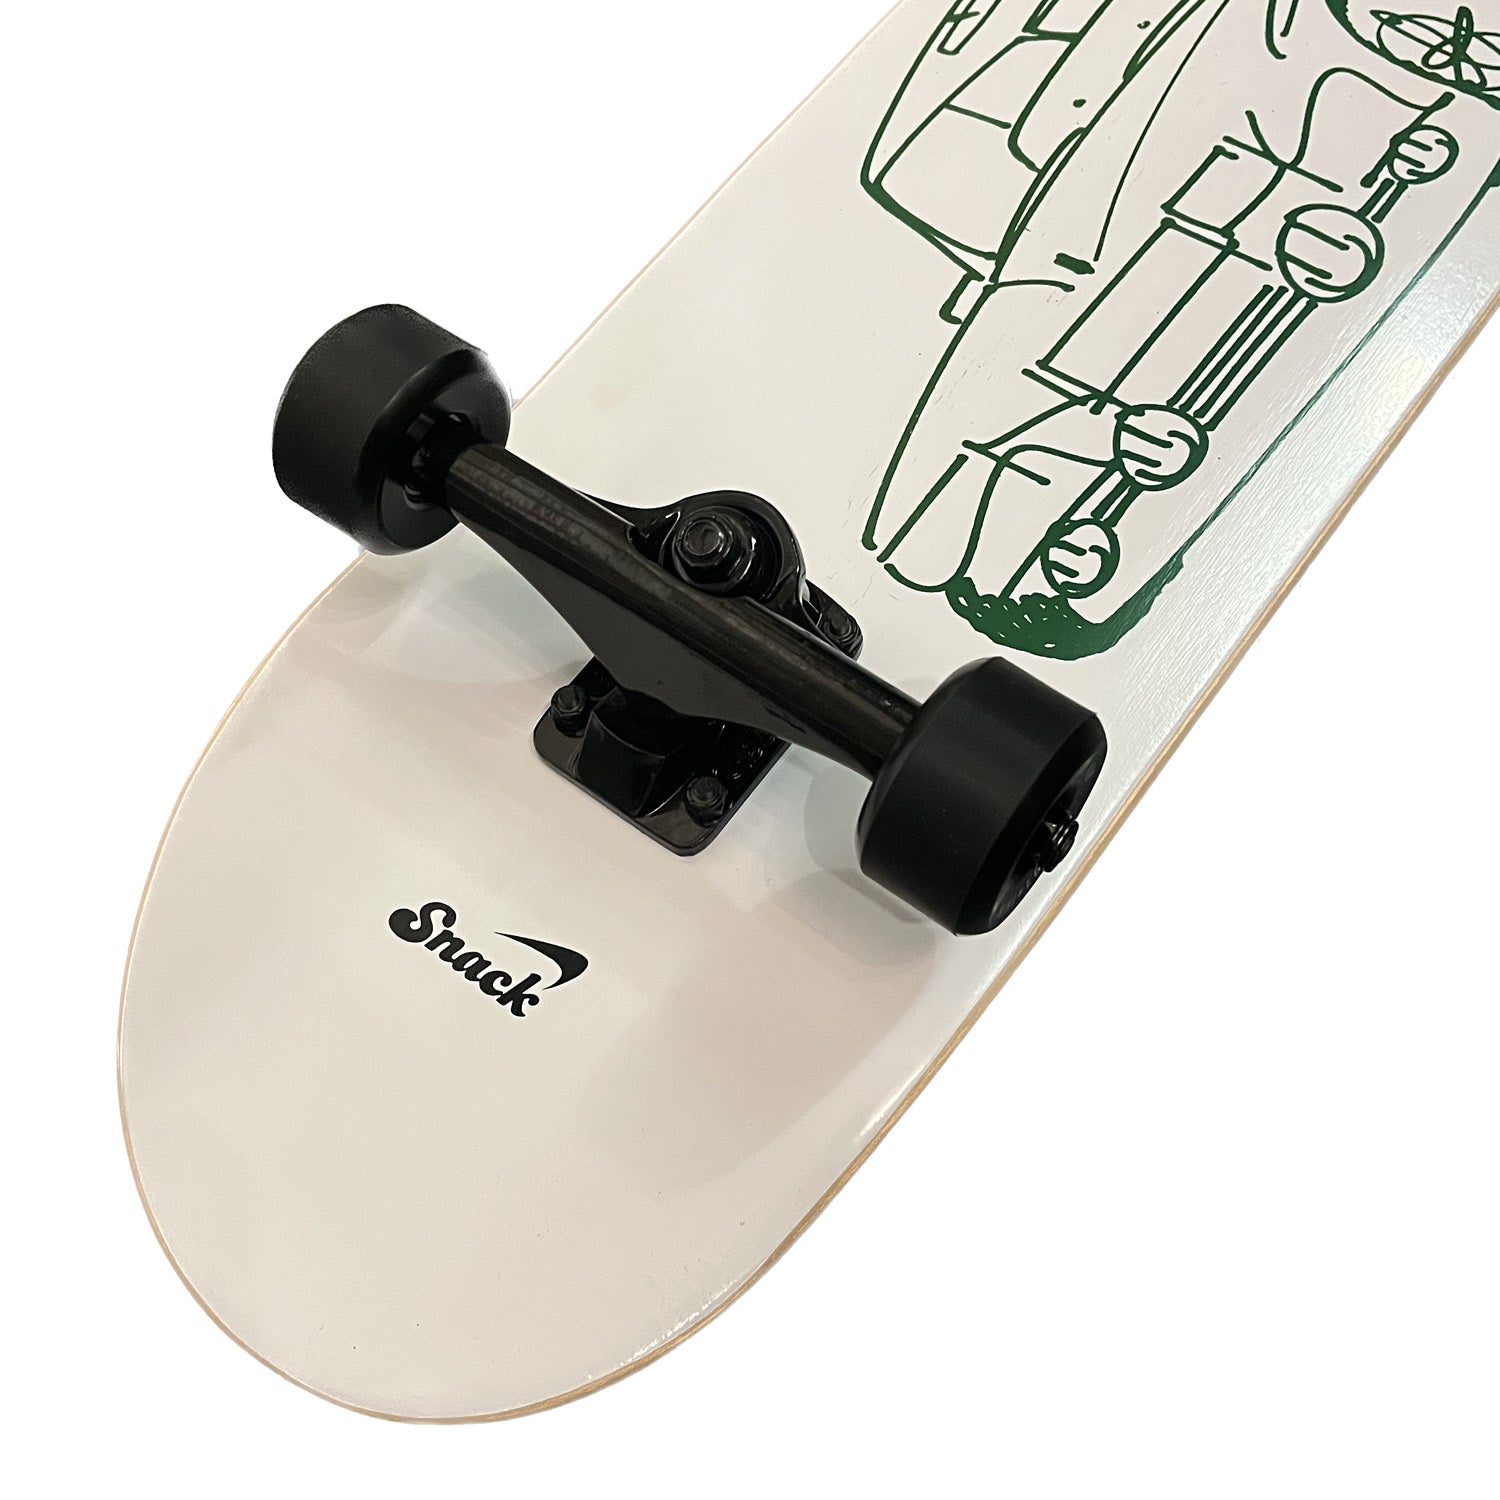 Snack Team Whip Custom Complete Skateboard Hybrid 8.0"